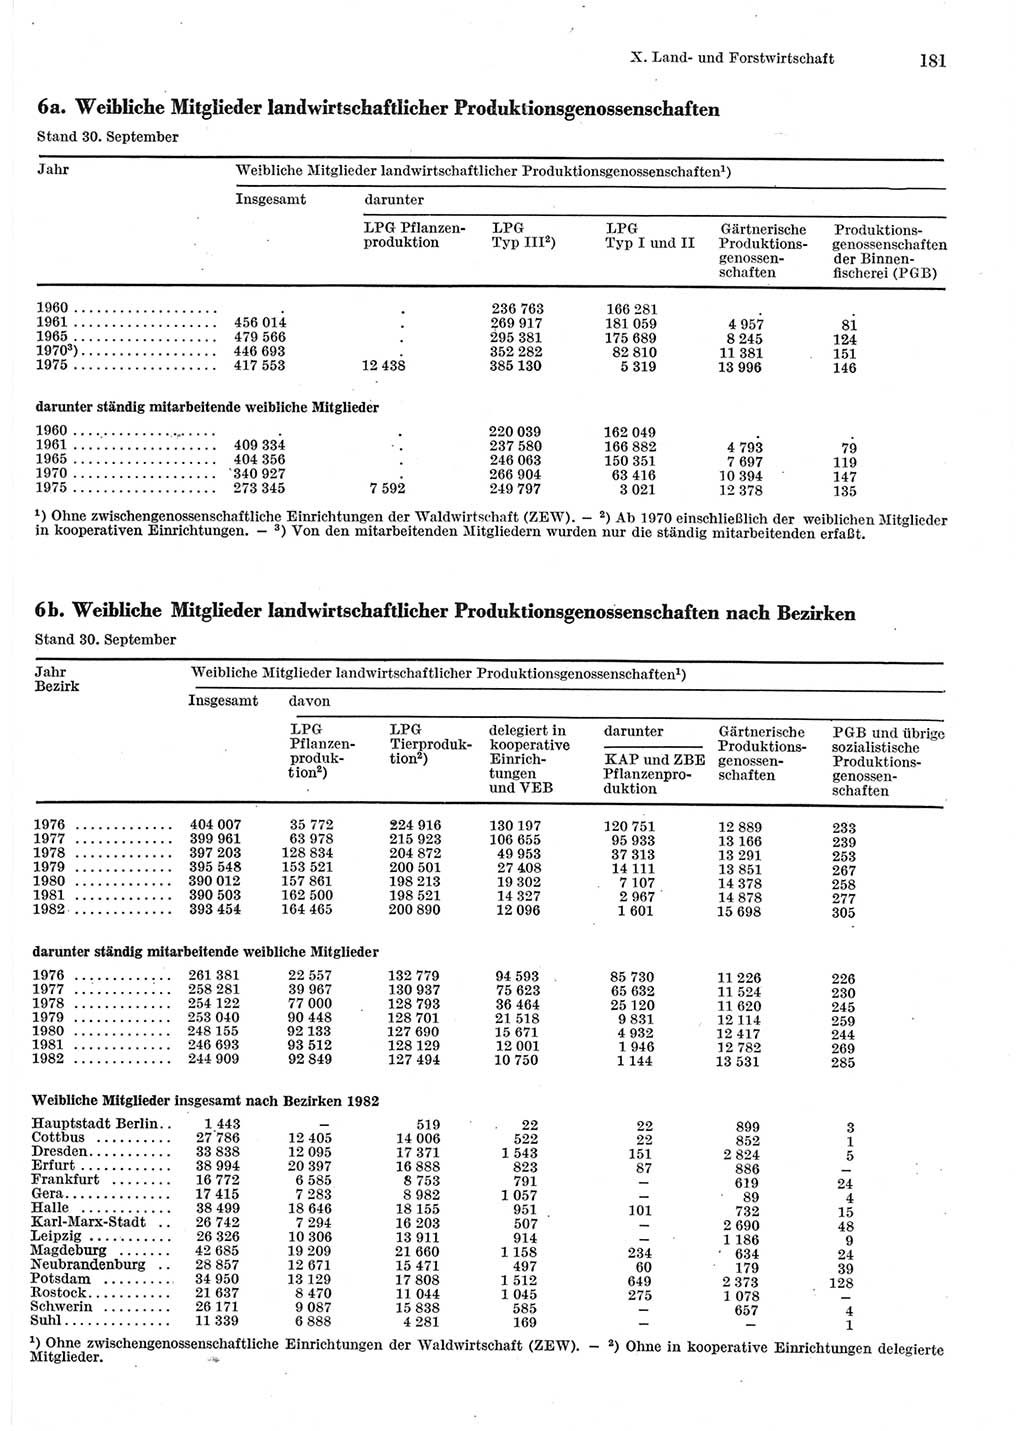 Statistisches Jahrbuch der Deutschen Demokratischen Republik (DDR) 1983, Seite 181 (Stat. Jb. DDR 1983, S. 181)